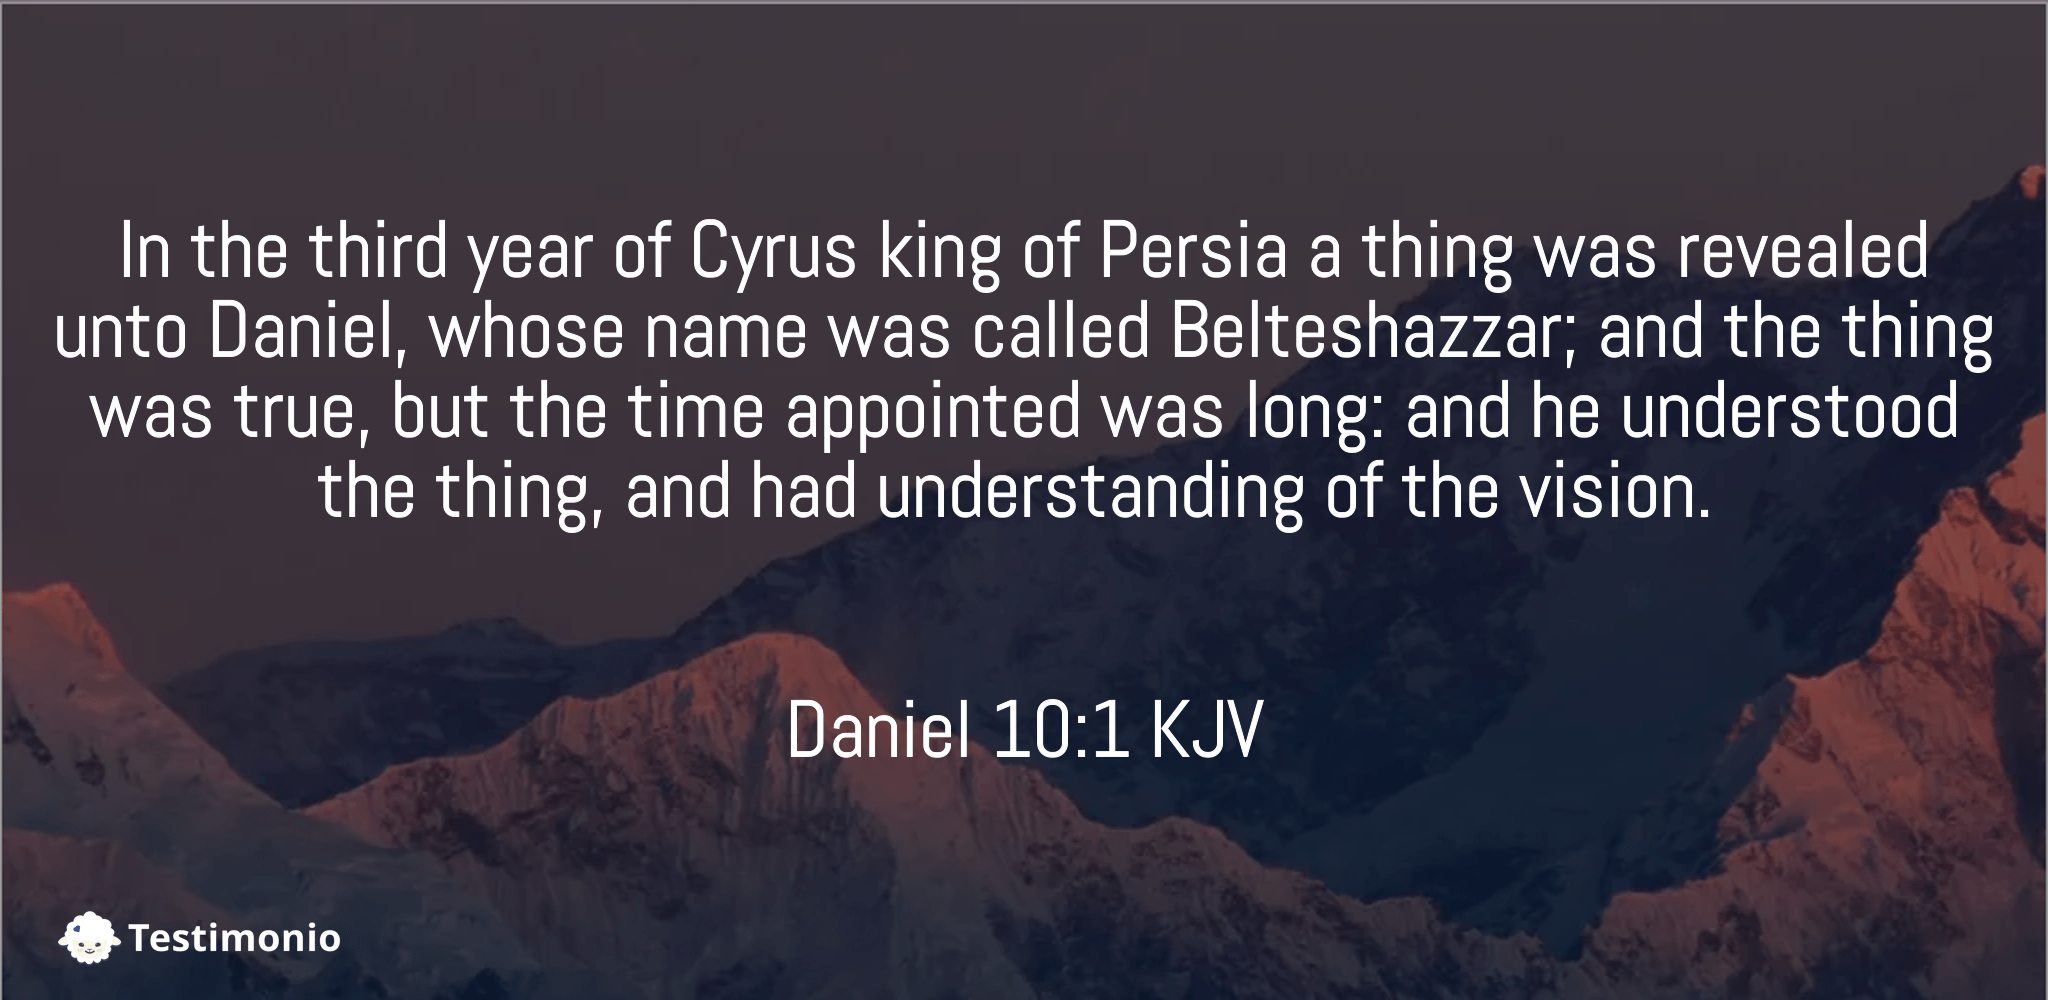 Daniel 10:1